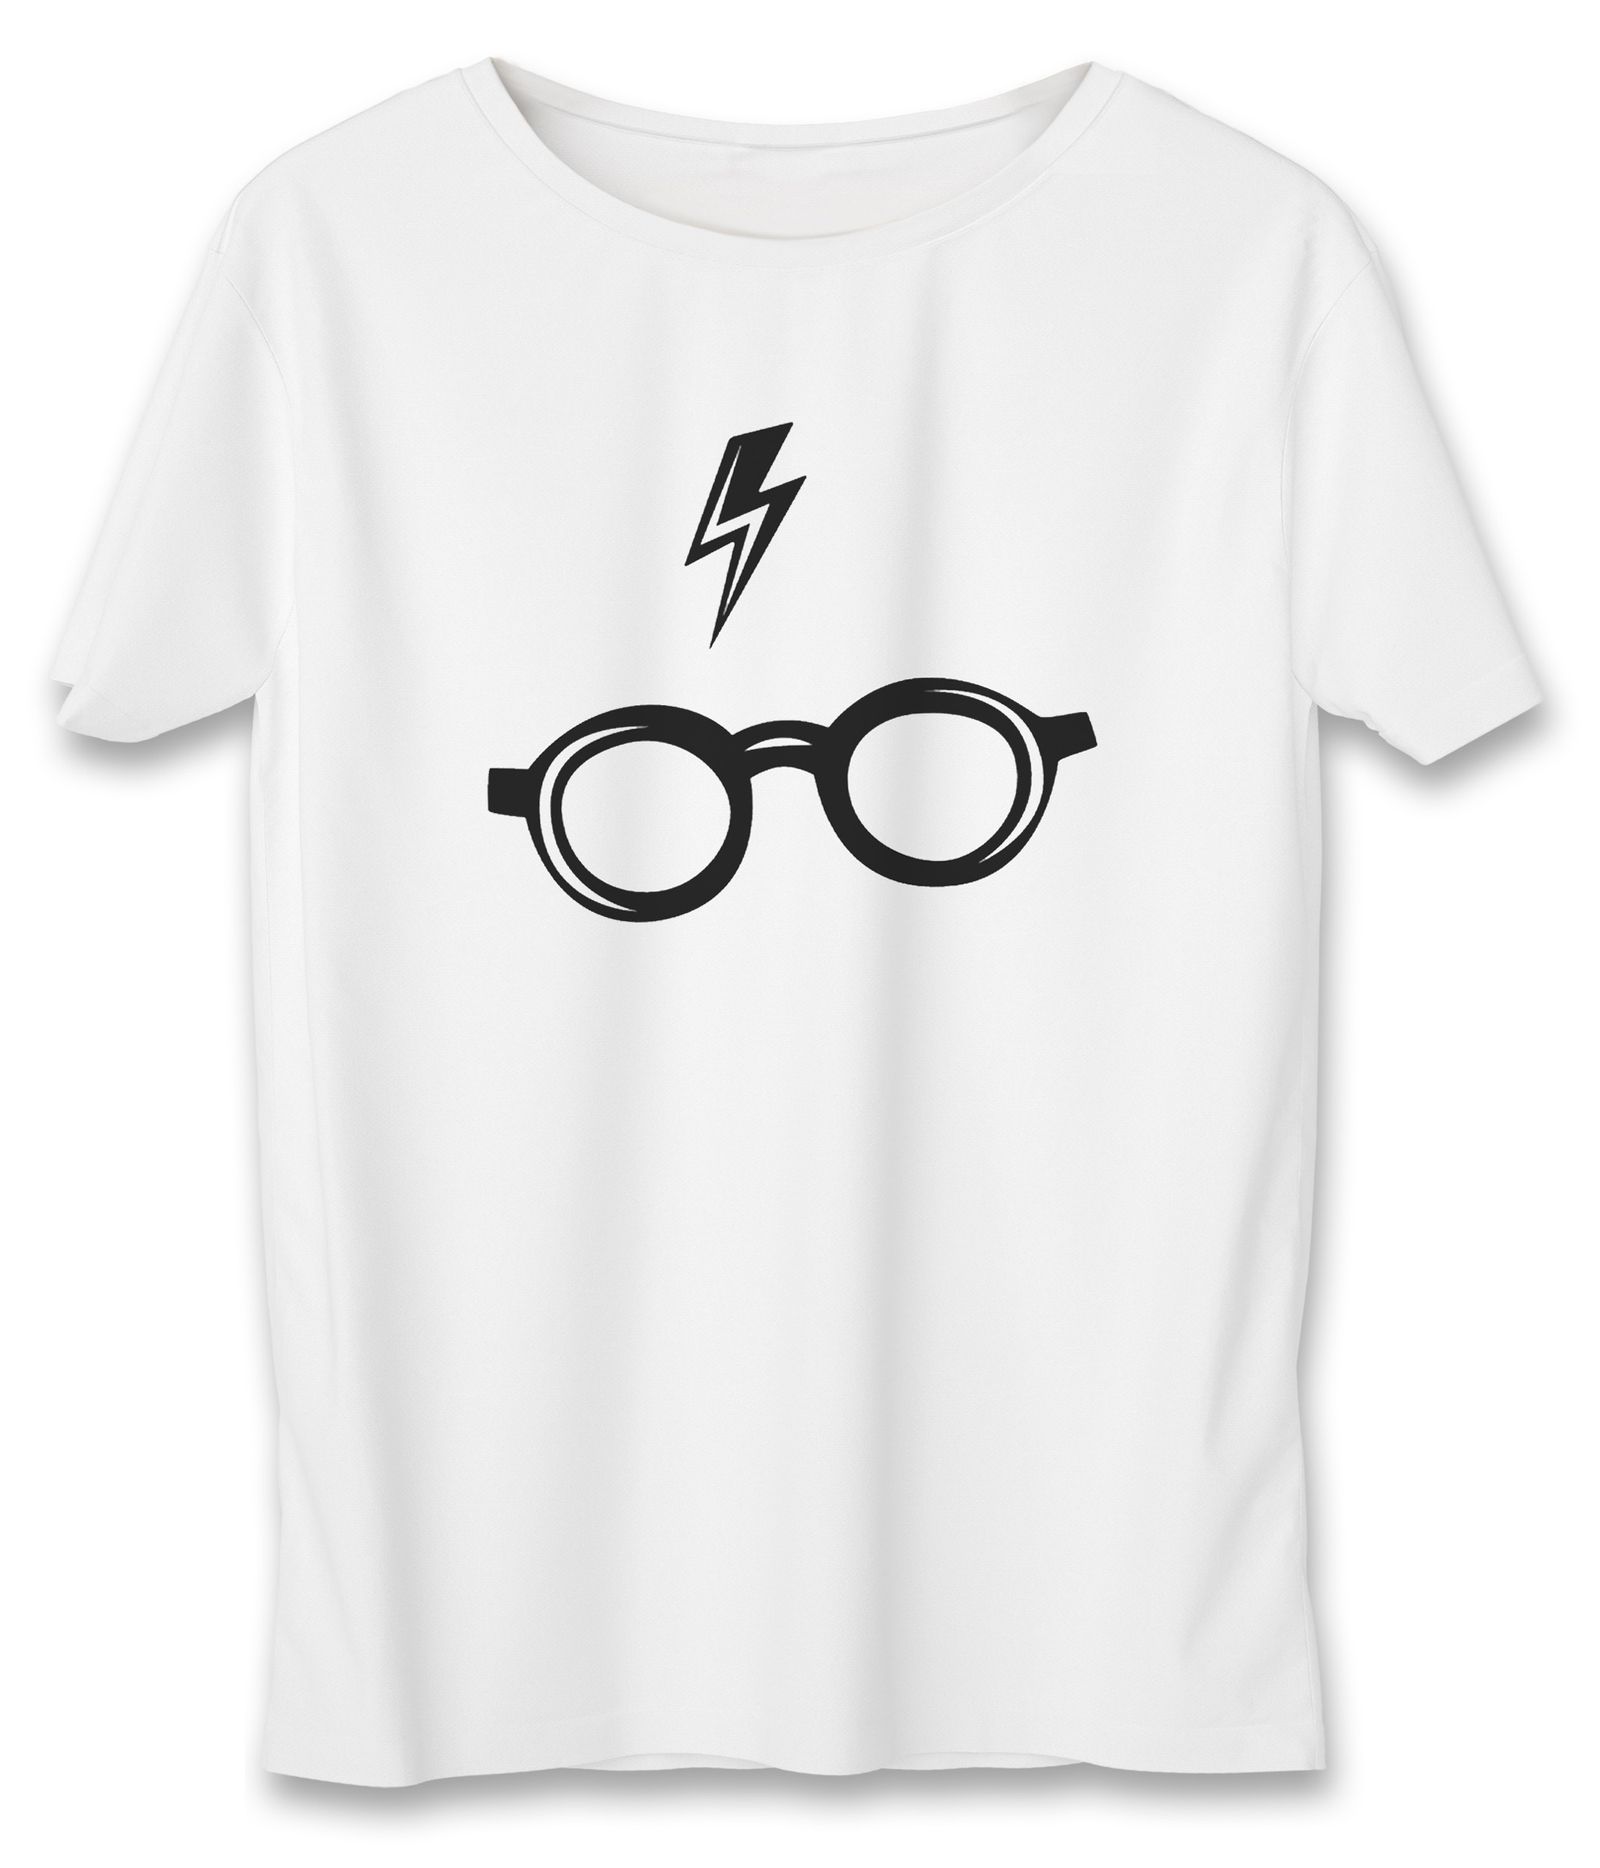 تی شرت زنانه به رسم طرح هری پاتر کد 5511 -  - 1